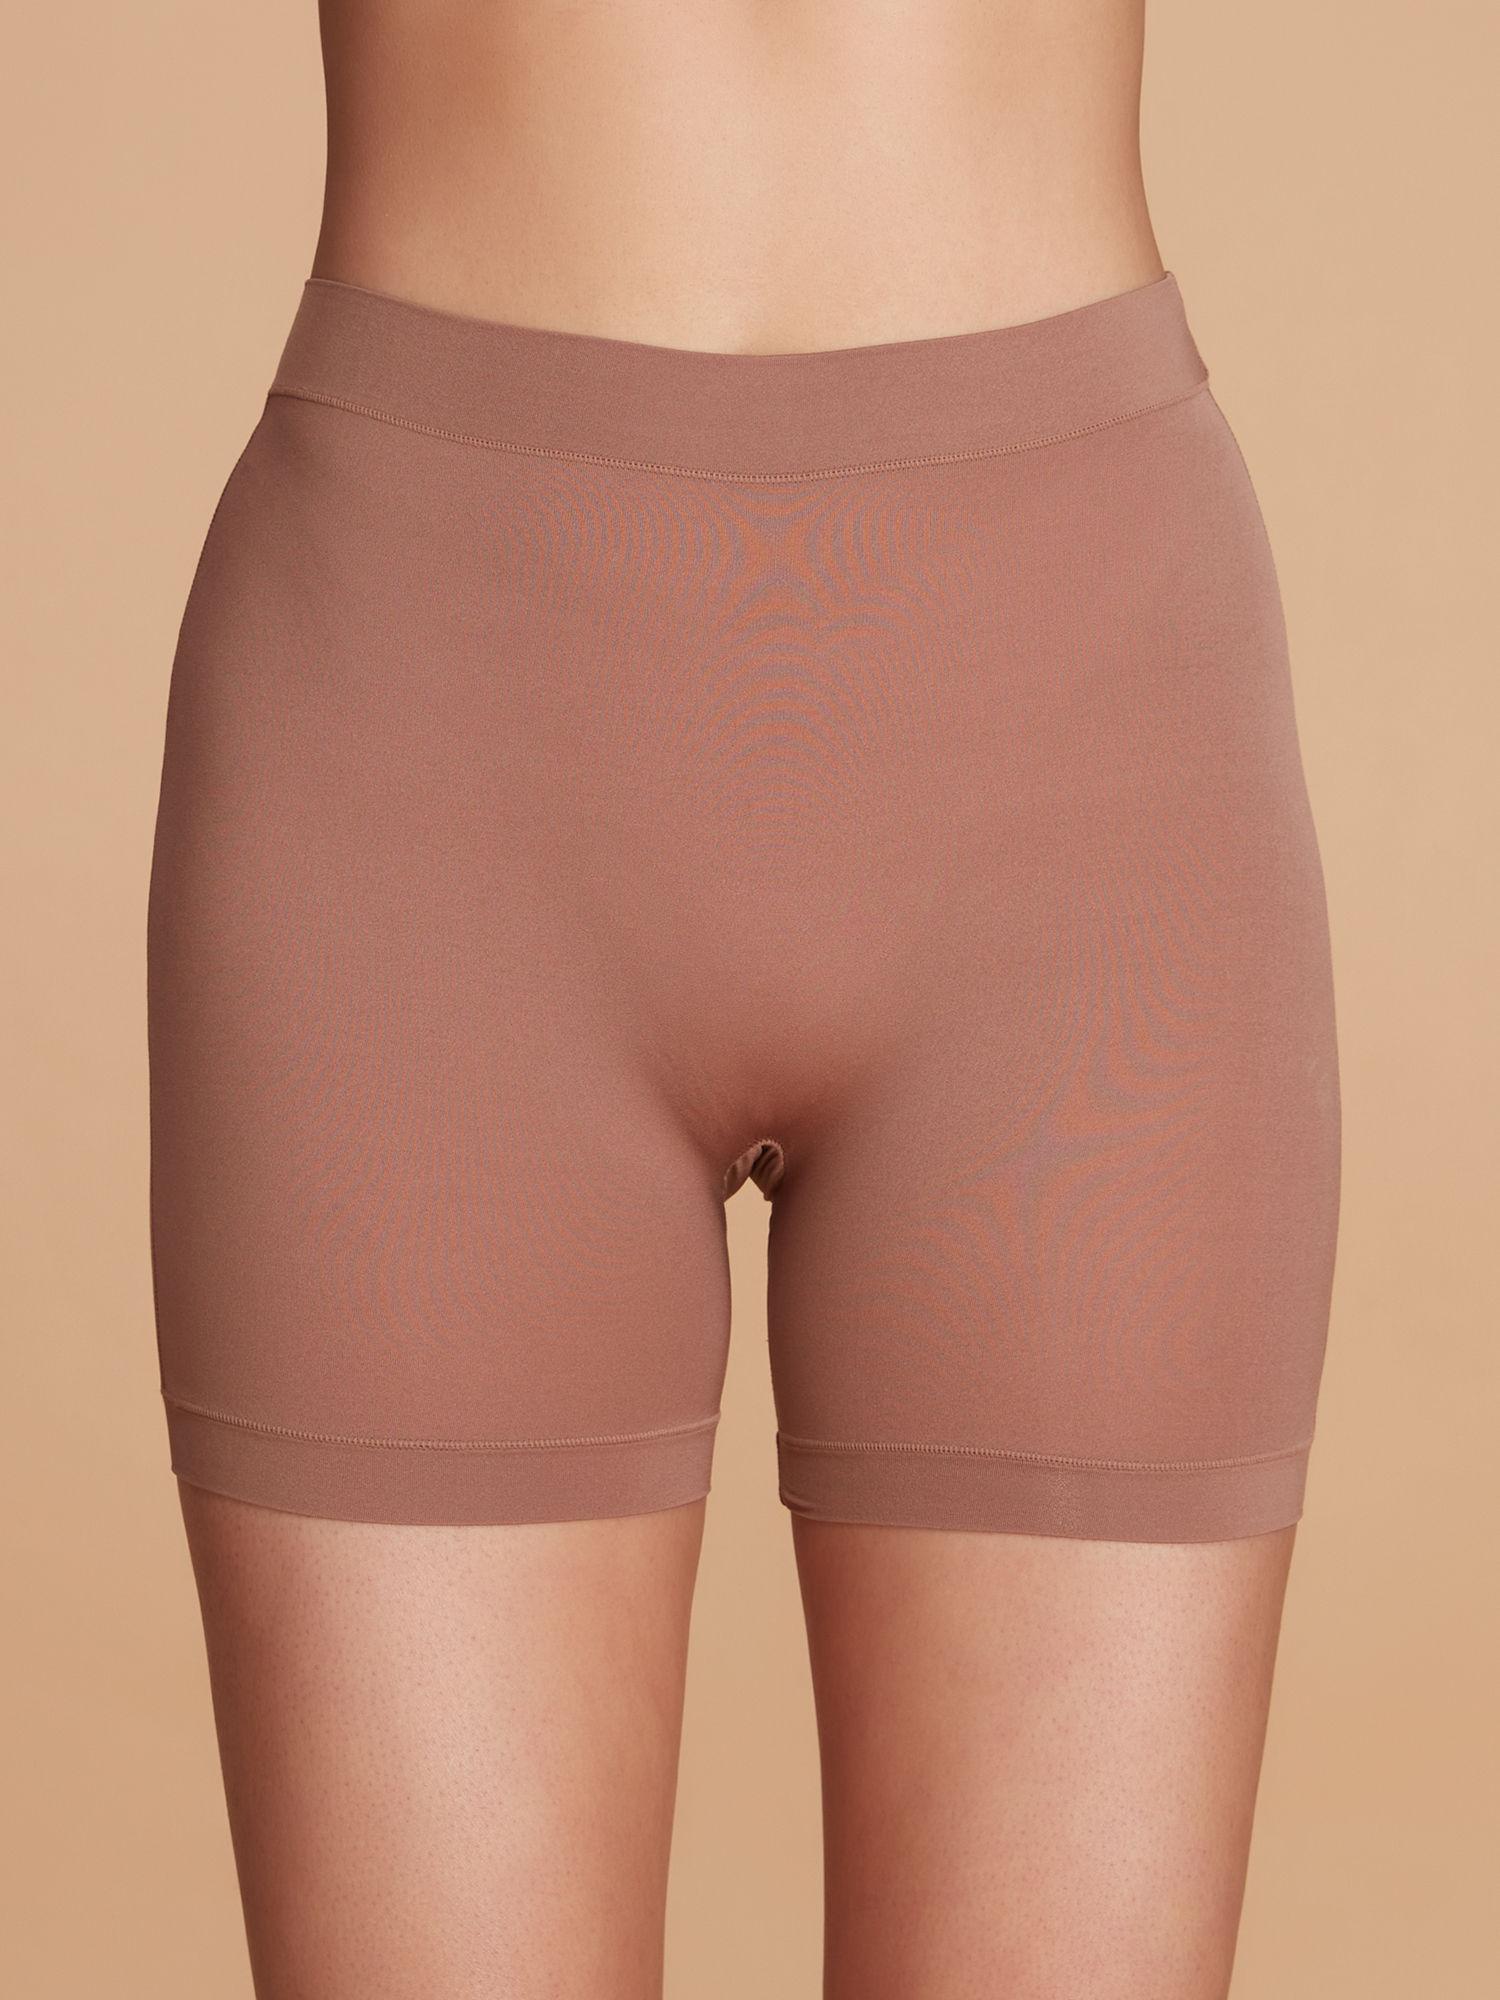 anti chafe shorts - nyp357 - brown